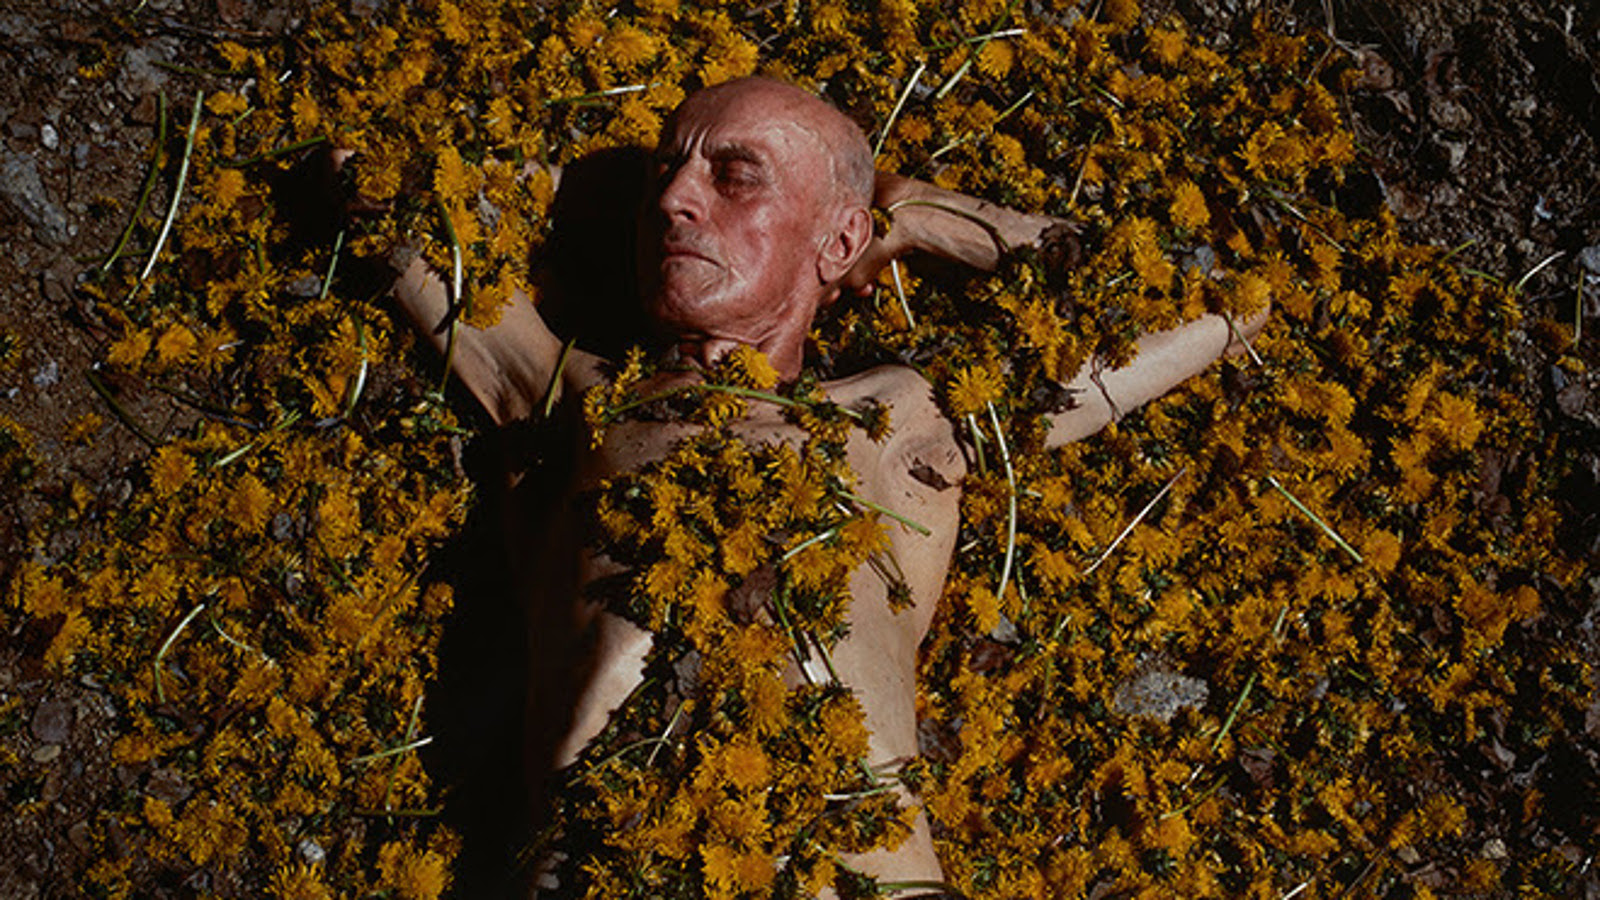  Kuvassa on vaalean ja tumman ruskeiden käpyjen keskellä makaamassa ruskettunut mies.